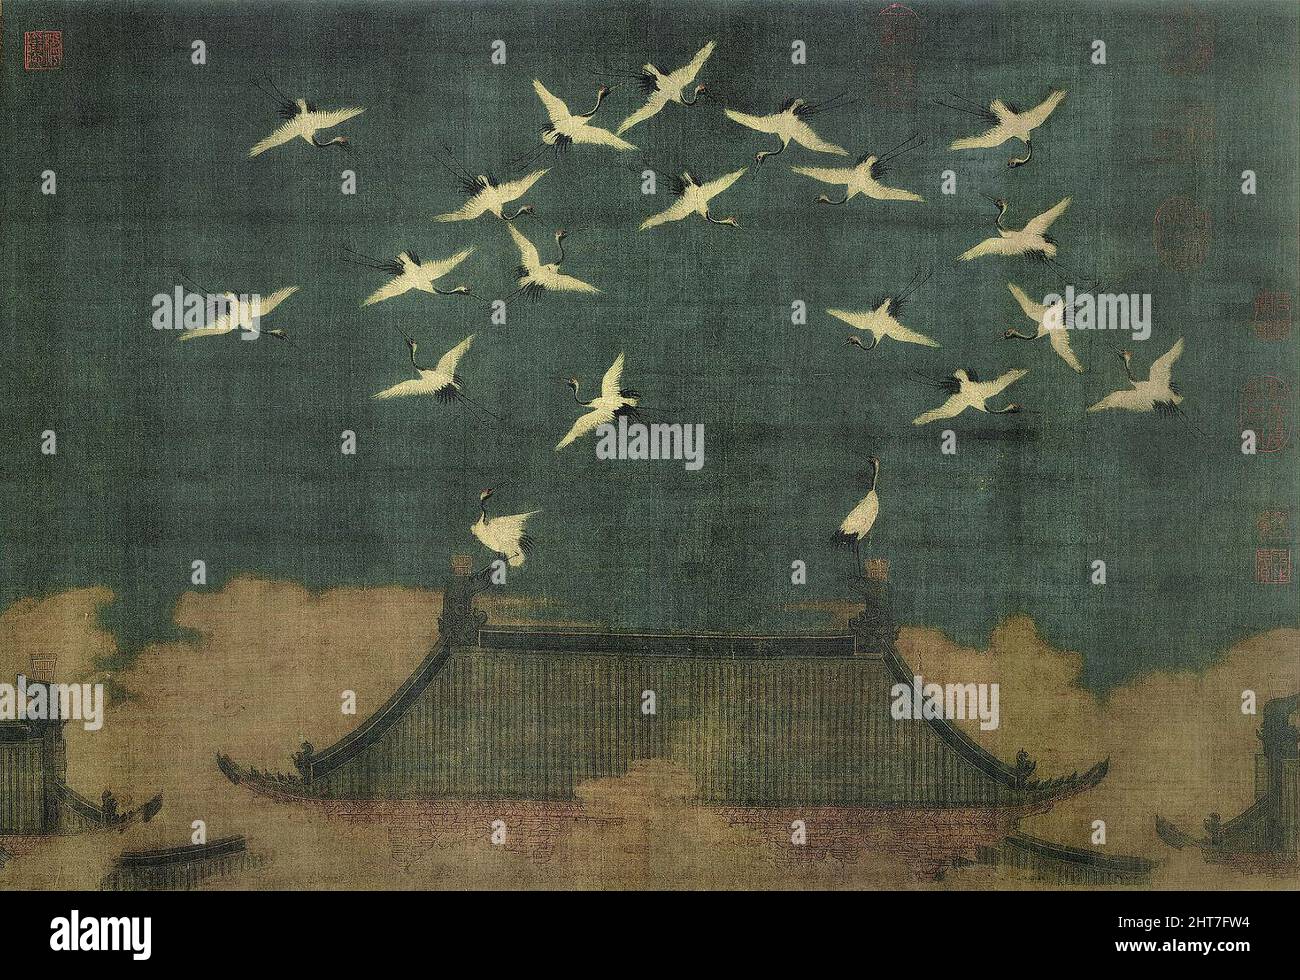 Grues propice par l'Empereur Huizong des Song (1082 - 1135) Année 1112, dynastie des Song du Nord ( ), de la technique de l'encre et couleur sur soie, lieu Liaoning Provincial Museum Banque D'Images